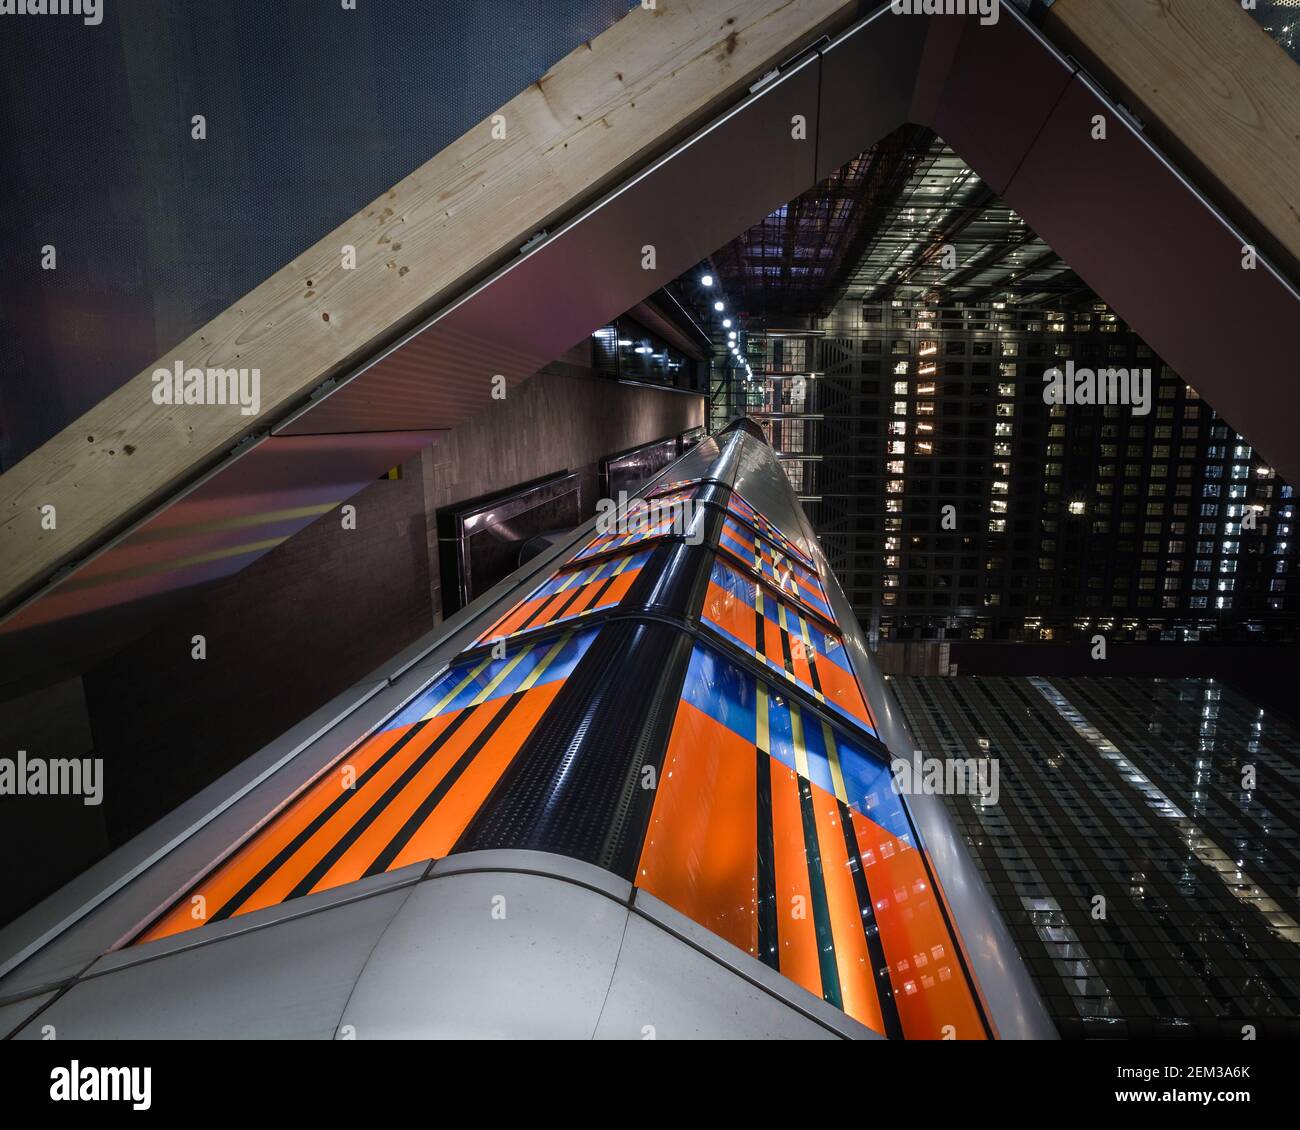 Durch Licht verbunden am Canary Wharf: Eine andere Perspektive des One Canada Square. Stockfoto